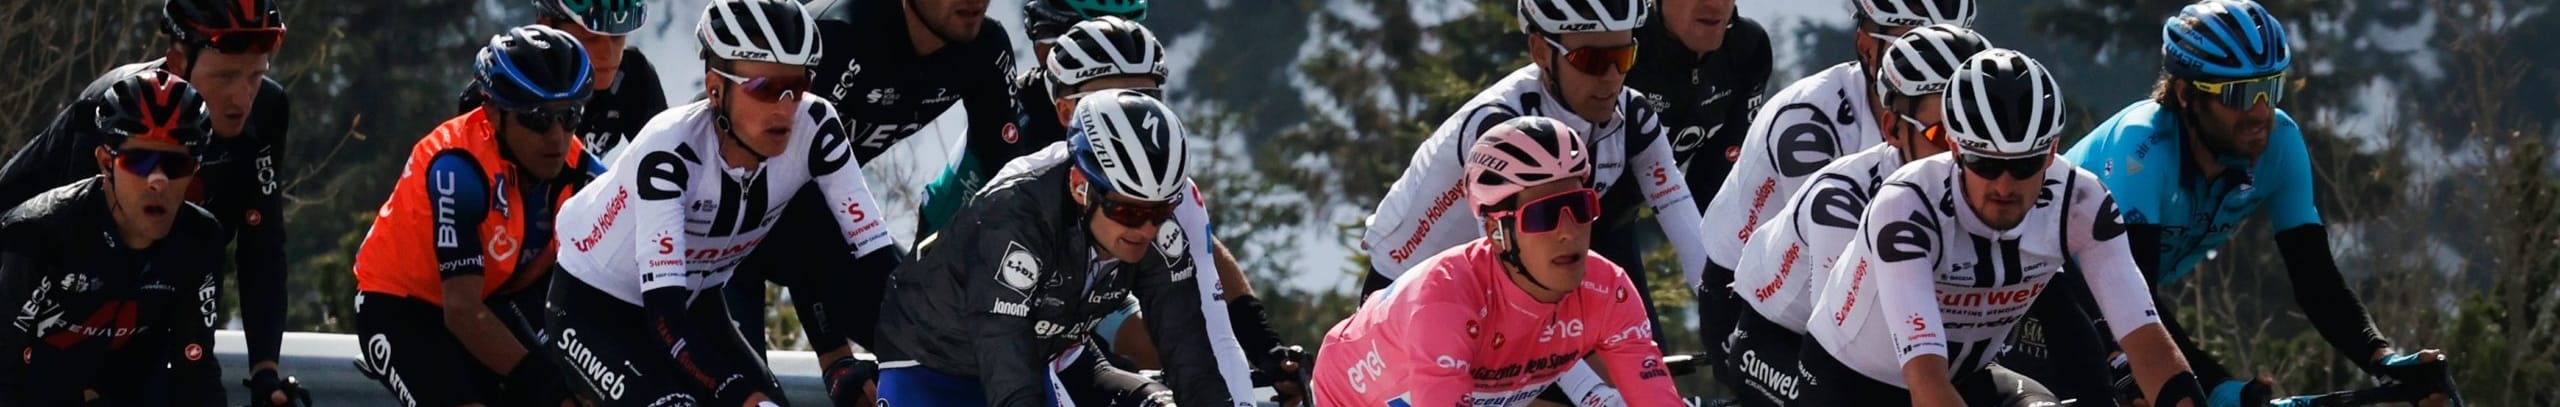 Giro d'Italia 2020, quote e favoriti per la tappa 18: assalto allo Stelvio